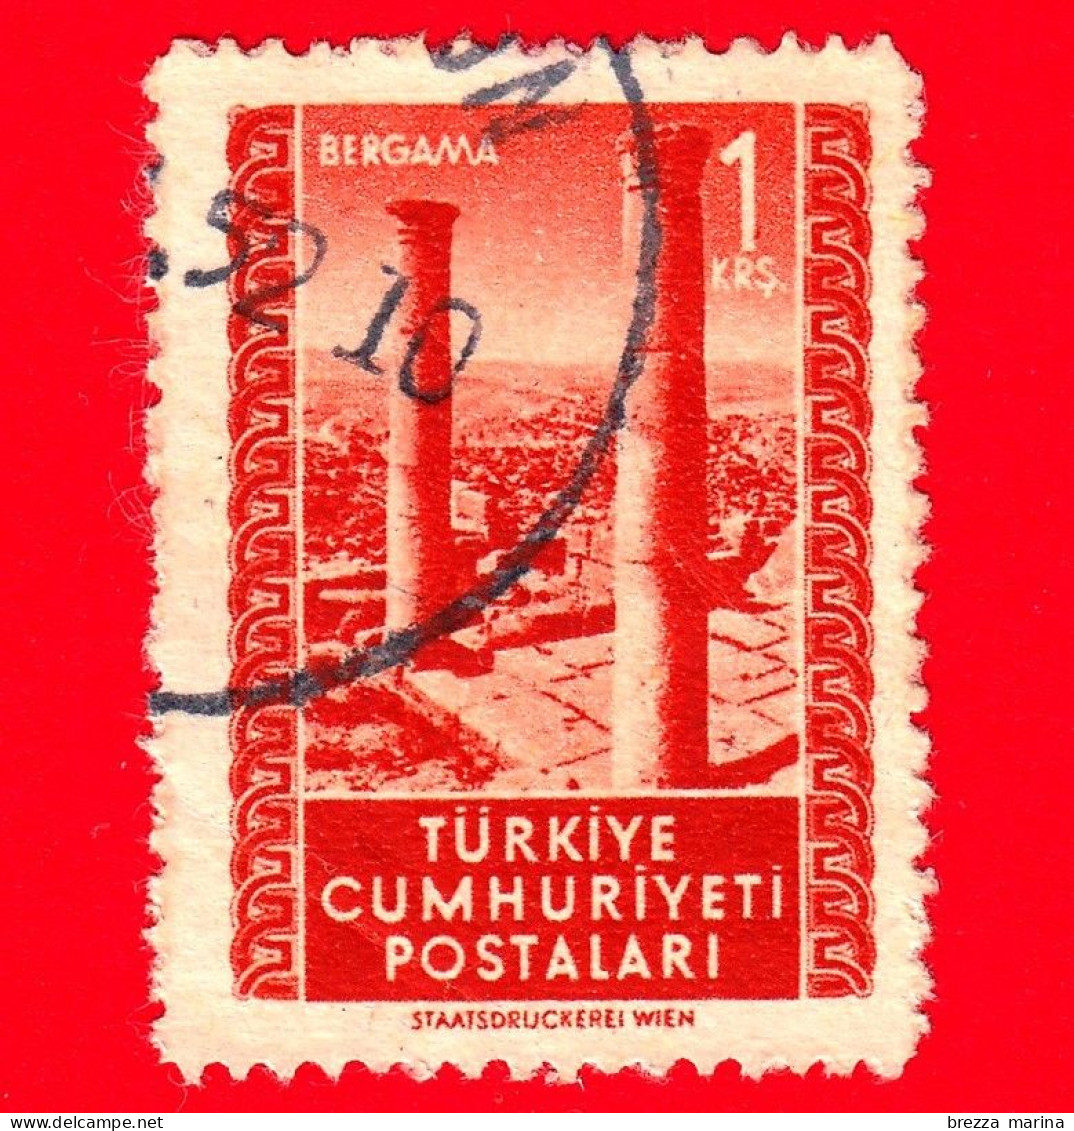 TURCHIA - Usato - 1952 - Rovine - Templi - Attrazioni E Atatürk - Bergama - 1 - Used Stamps